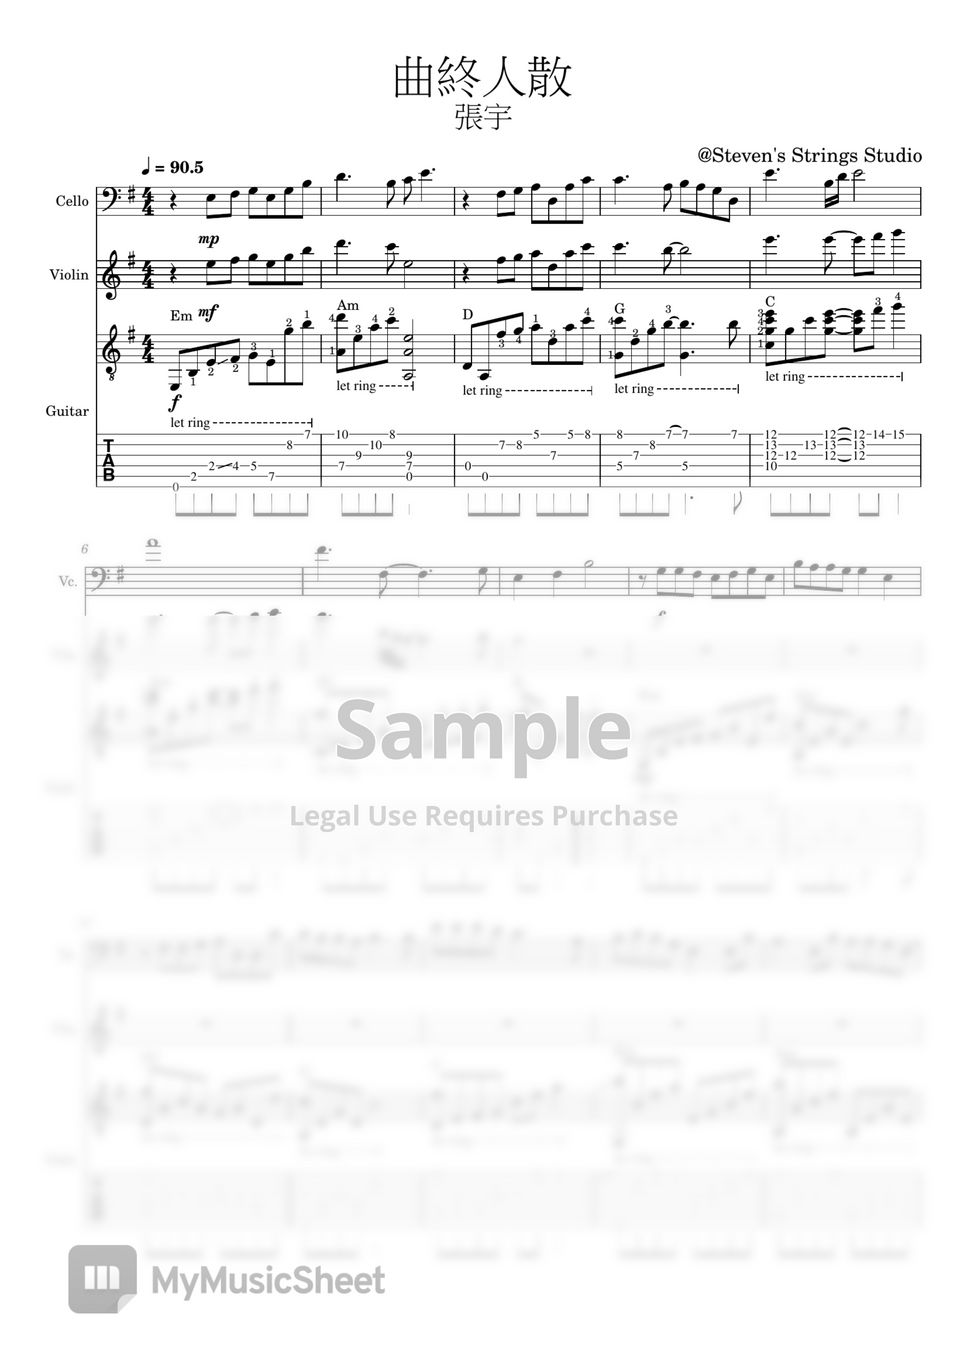 張宇 - 曲終人散 (Cello Violin Guitar Trio) by Steven's Strings Studio